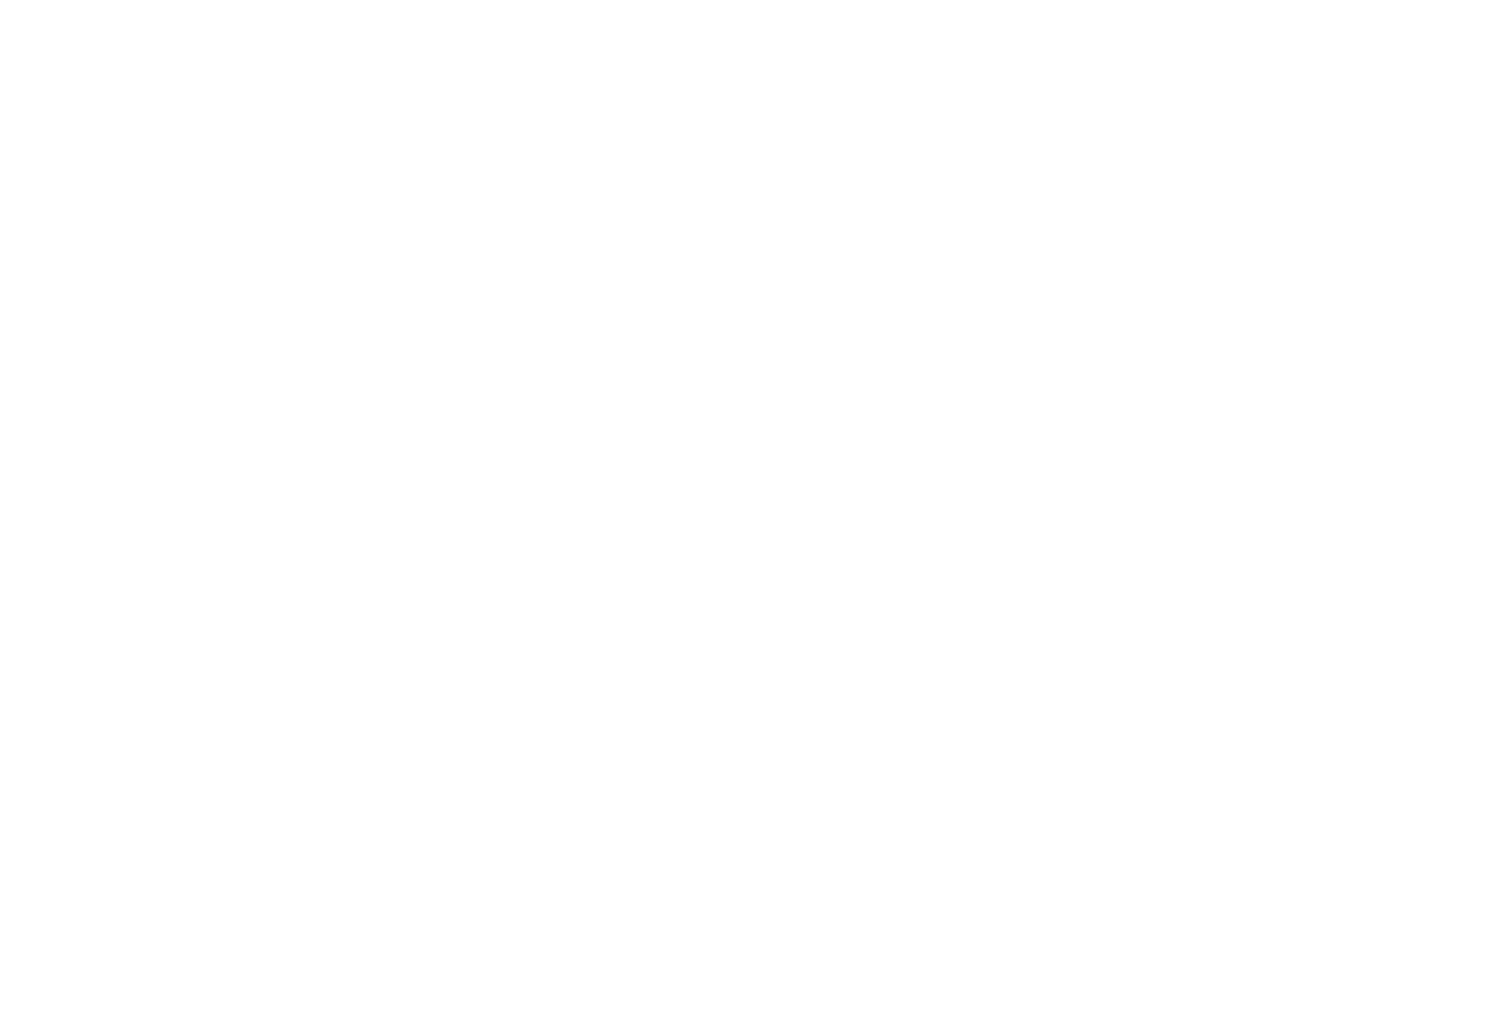 One Stone Studios